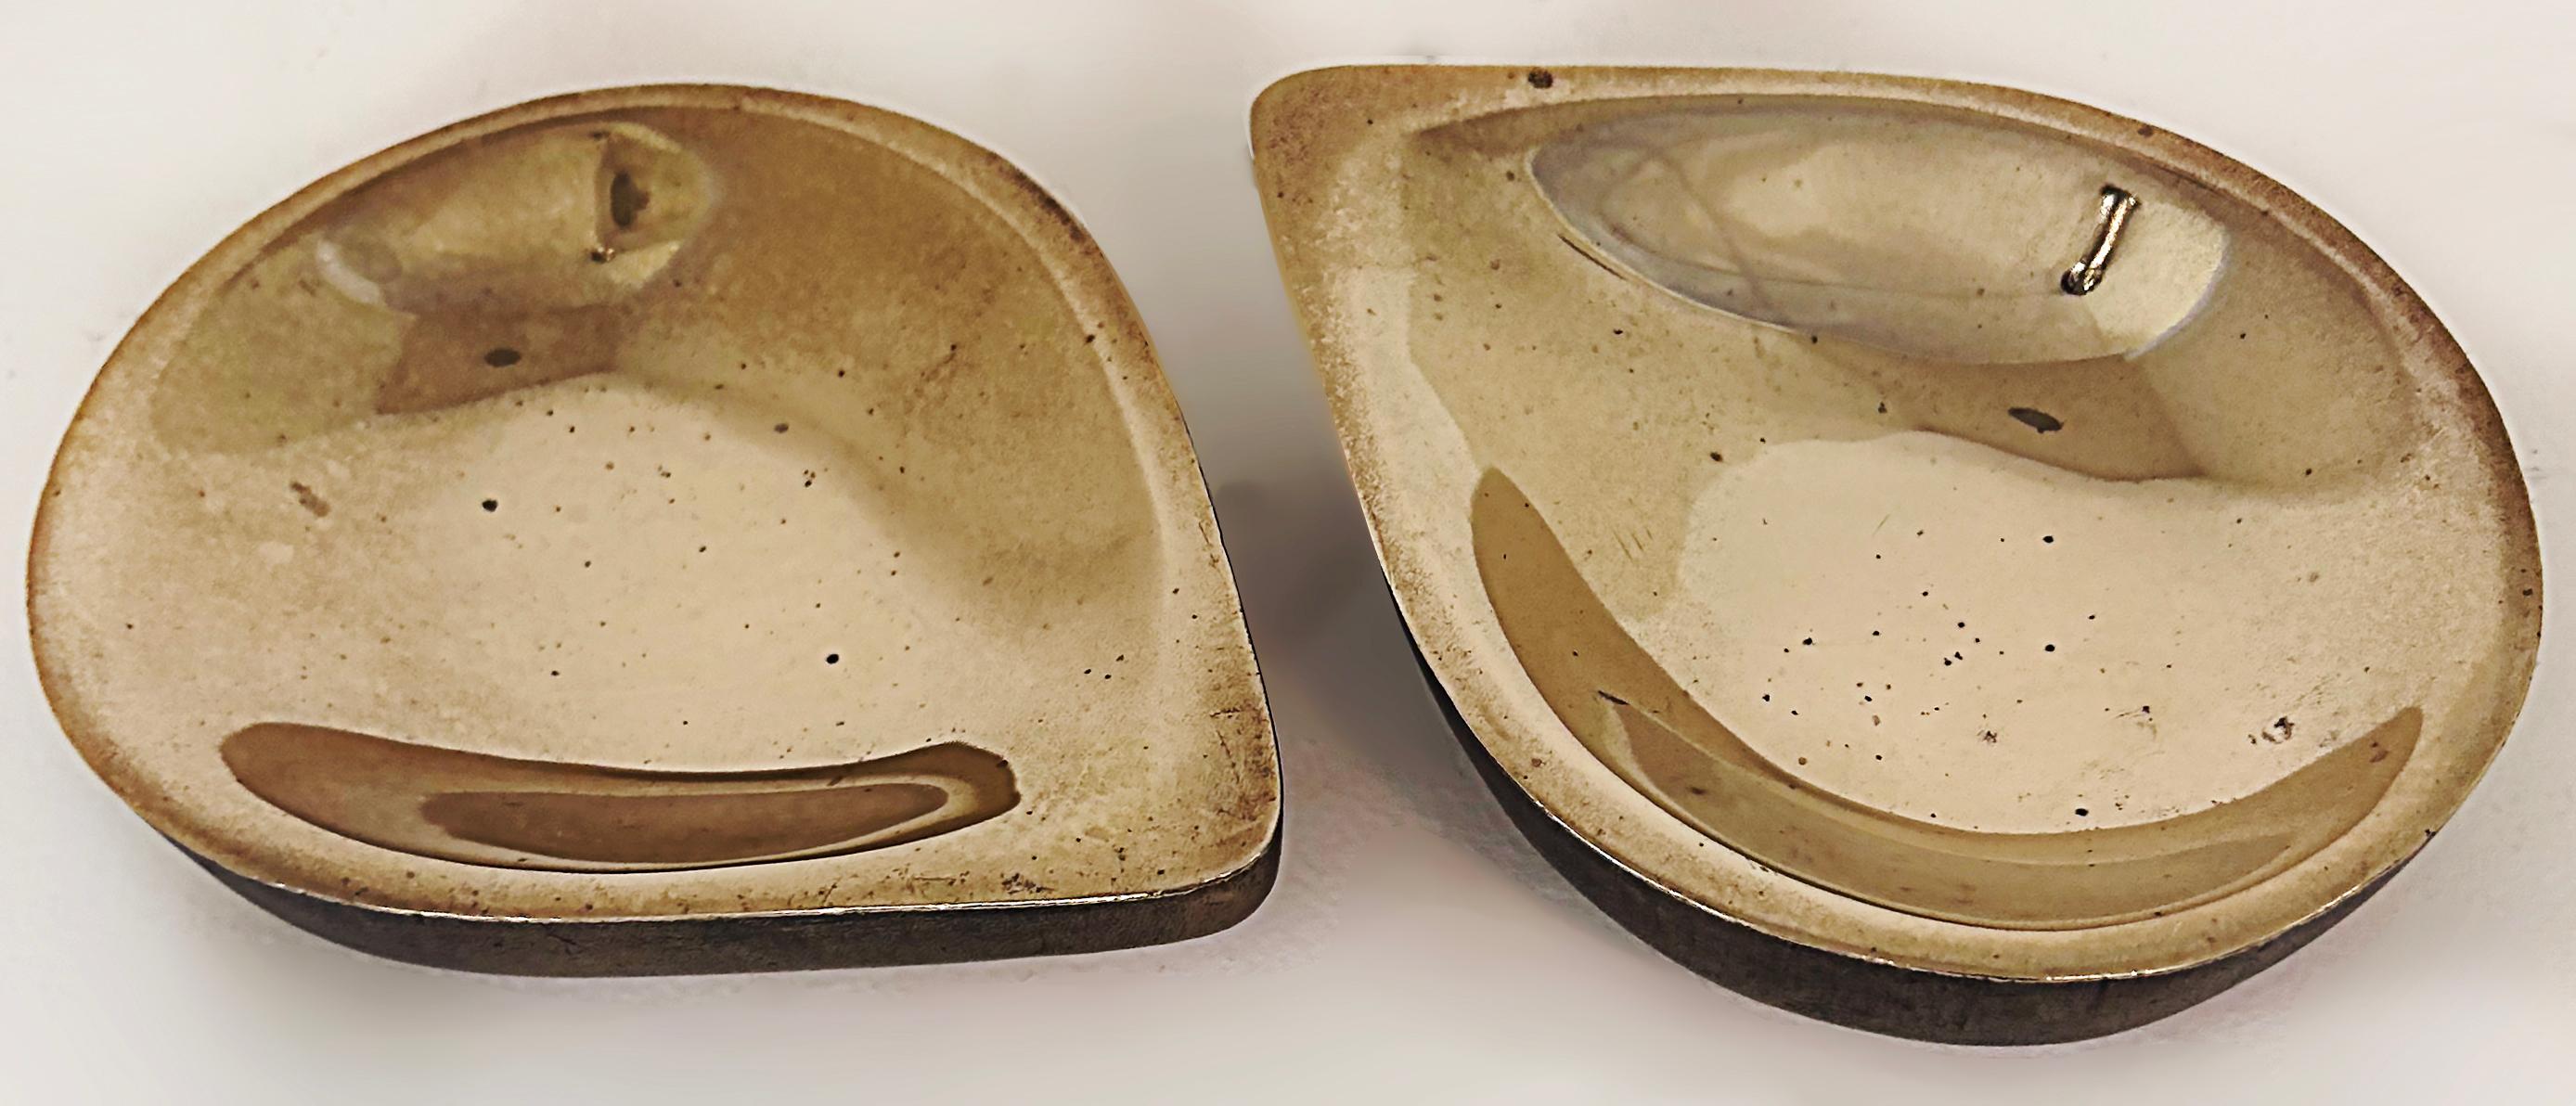 Steven Haulenbeek Ice Cast Bronze Teardrop Bowls, Heavy, Substantial Pair (Paire)

La vente porte sur une paire de bols en forme de goutte d'eau de l'artiste sculpteur américain Steven Haulenbeek. Les bols sont coulés dans la glace pour créer une